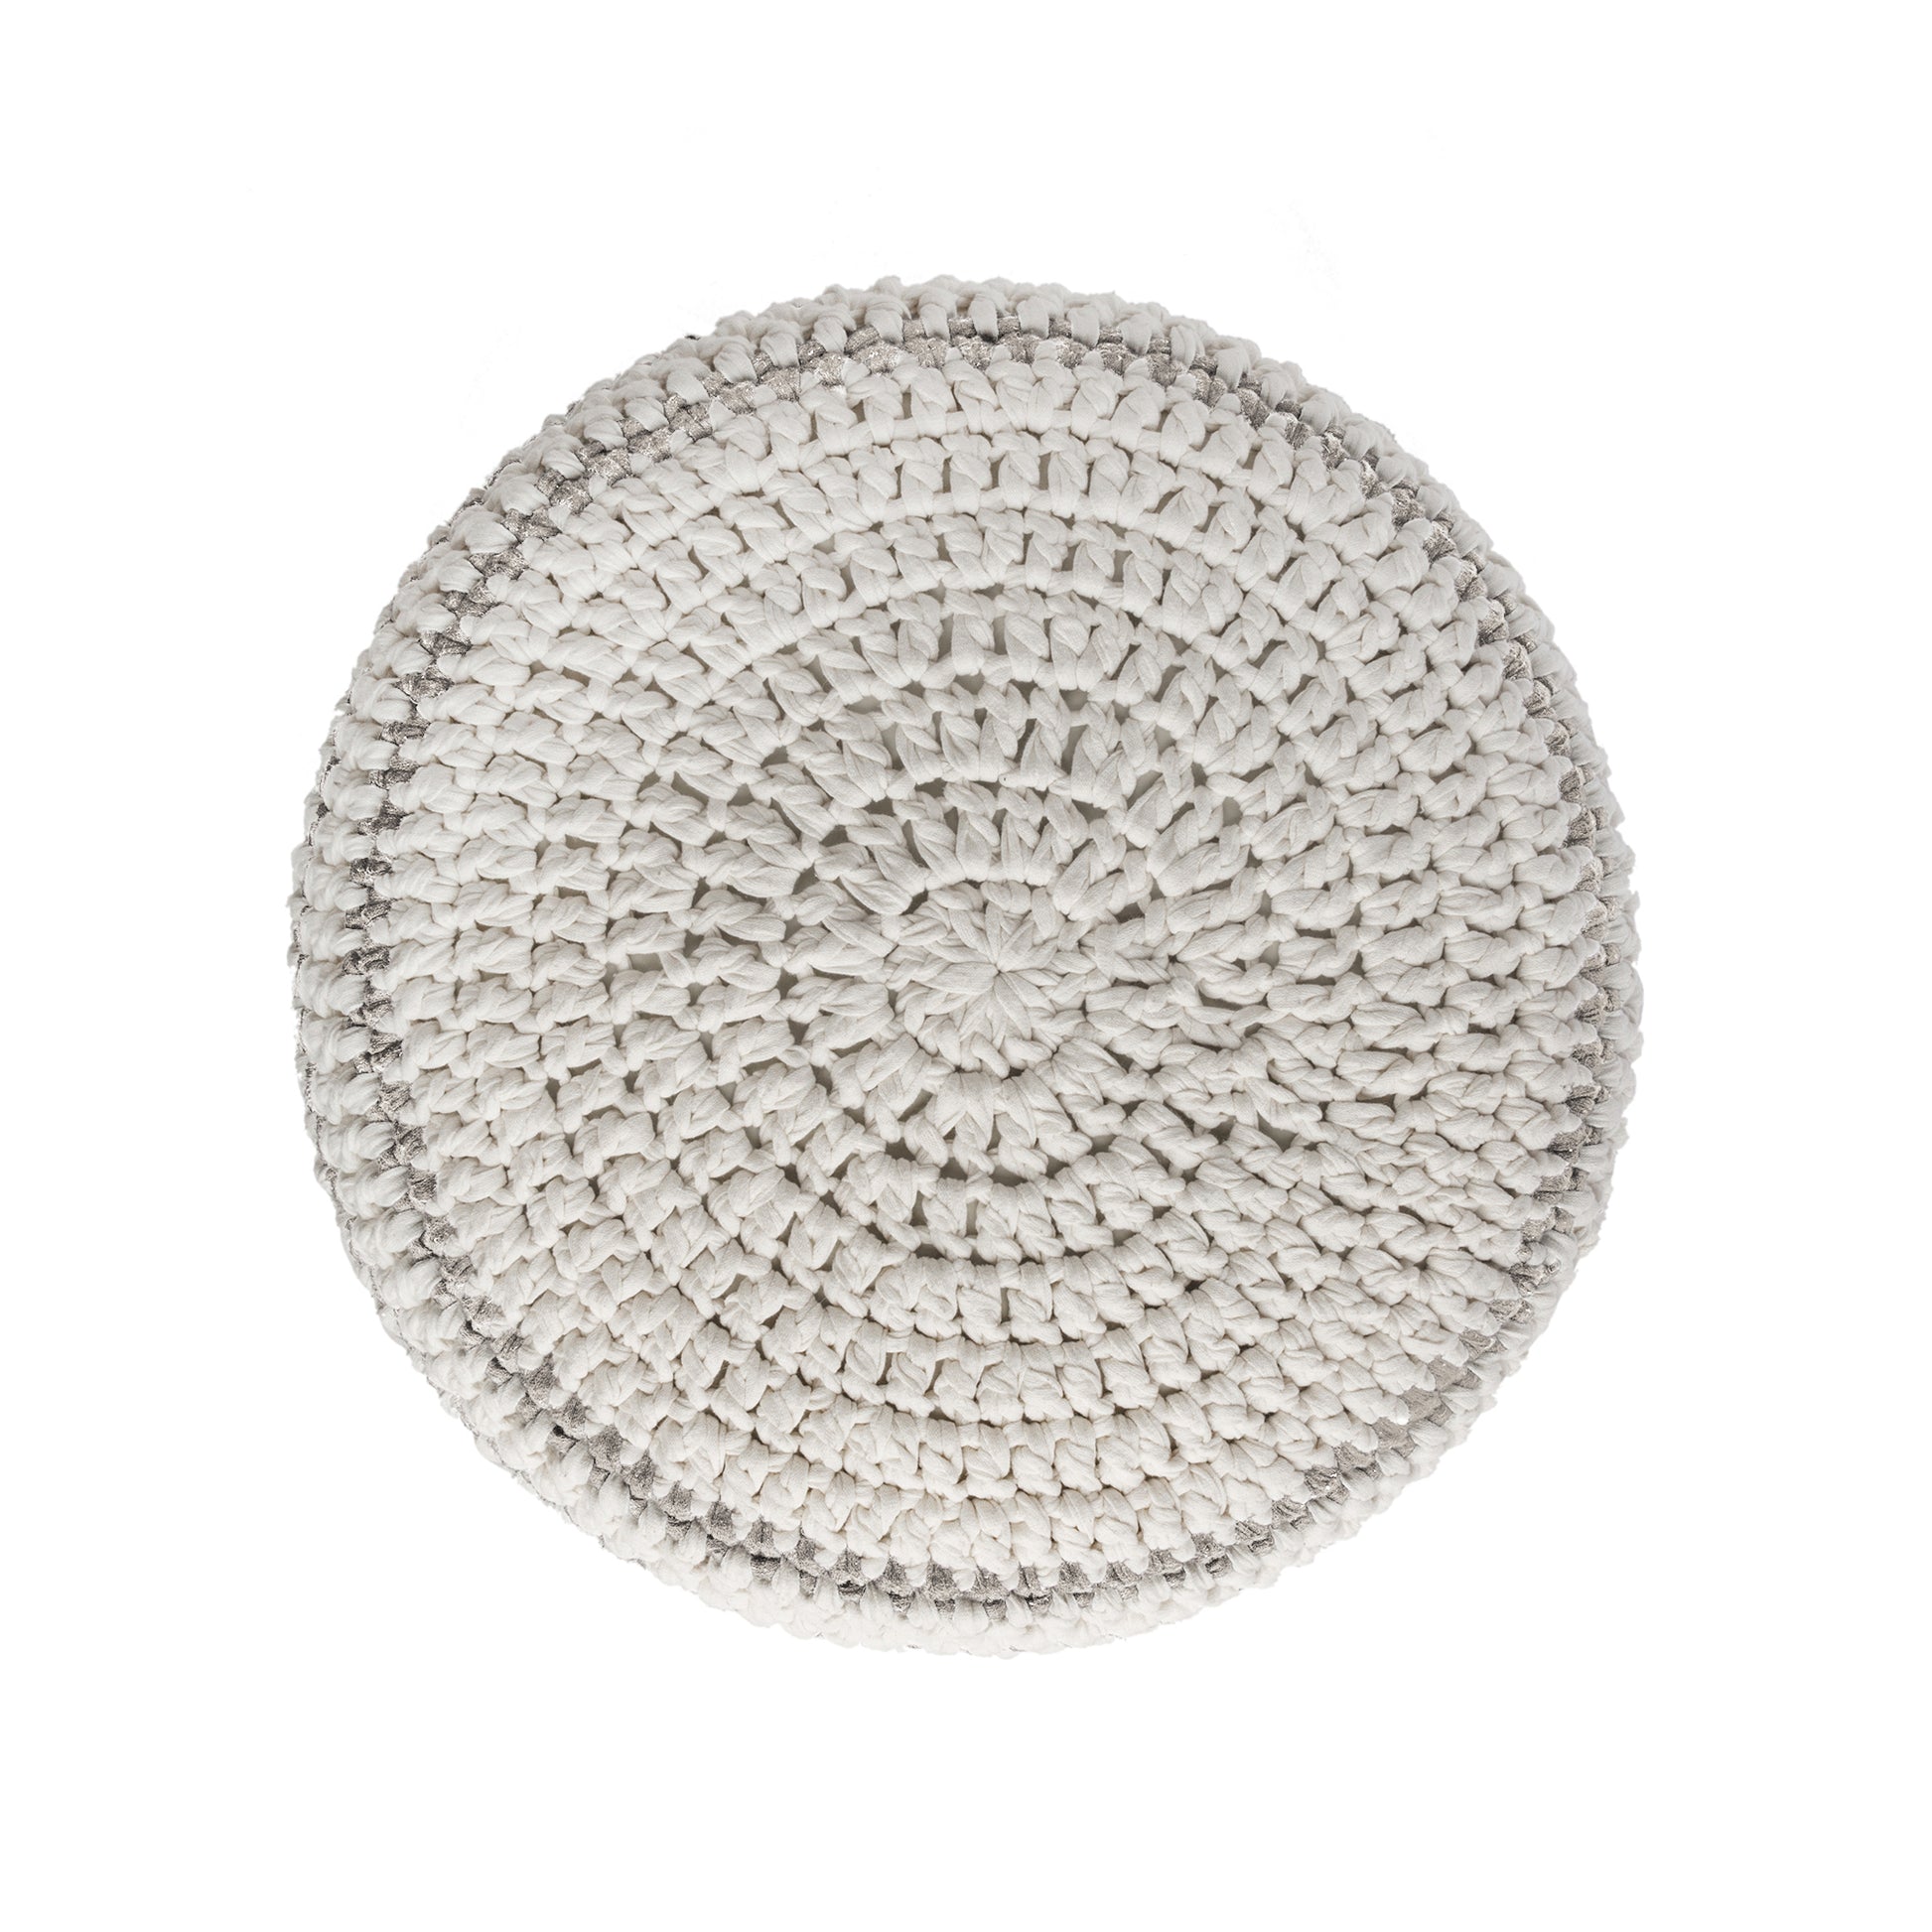 Puff de crochê artesanal listras, Fendi, com fio 100% algodão.  Fechamento com zíper, possibilitando a remoção da capa para lavagem.  Dimensões: Altura - 30cm; Diâmetro - 60cm. 